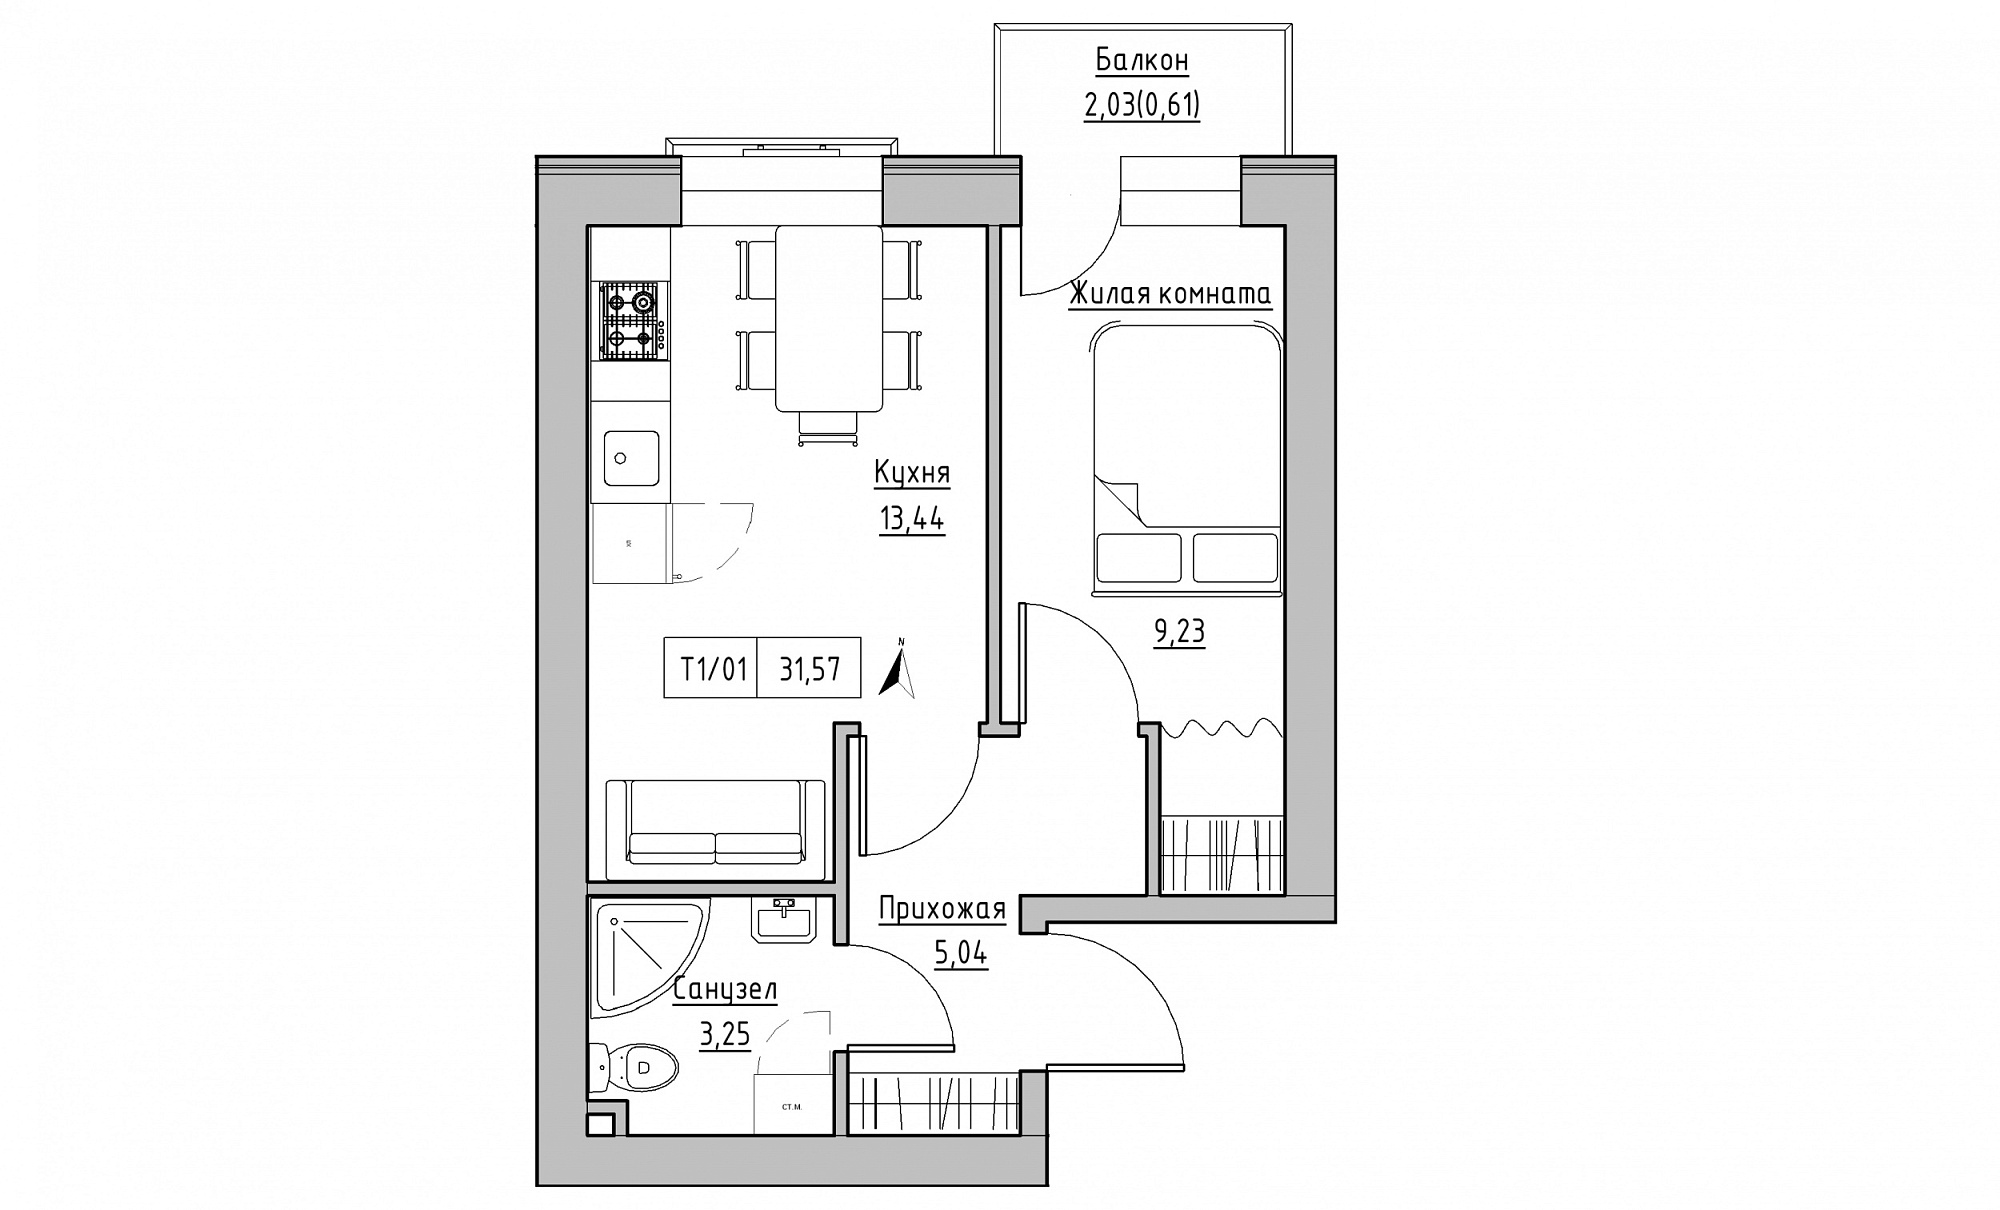 Планування 1-к квартира площею 31.57м2, KS-015-05/0016.